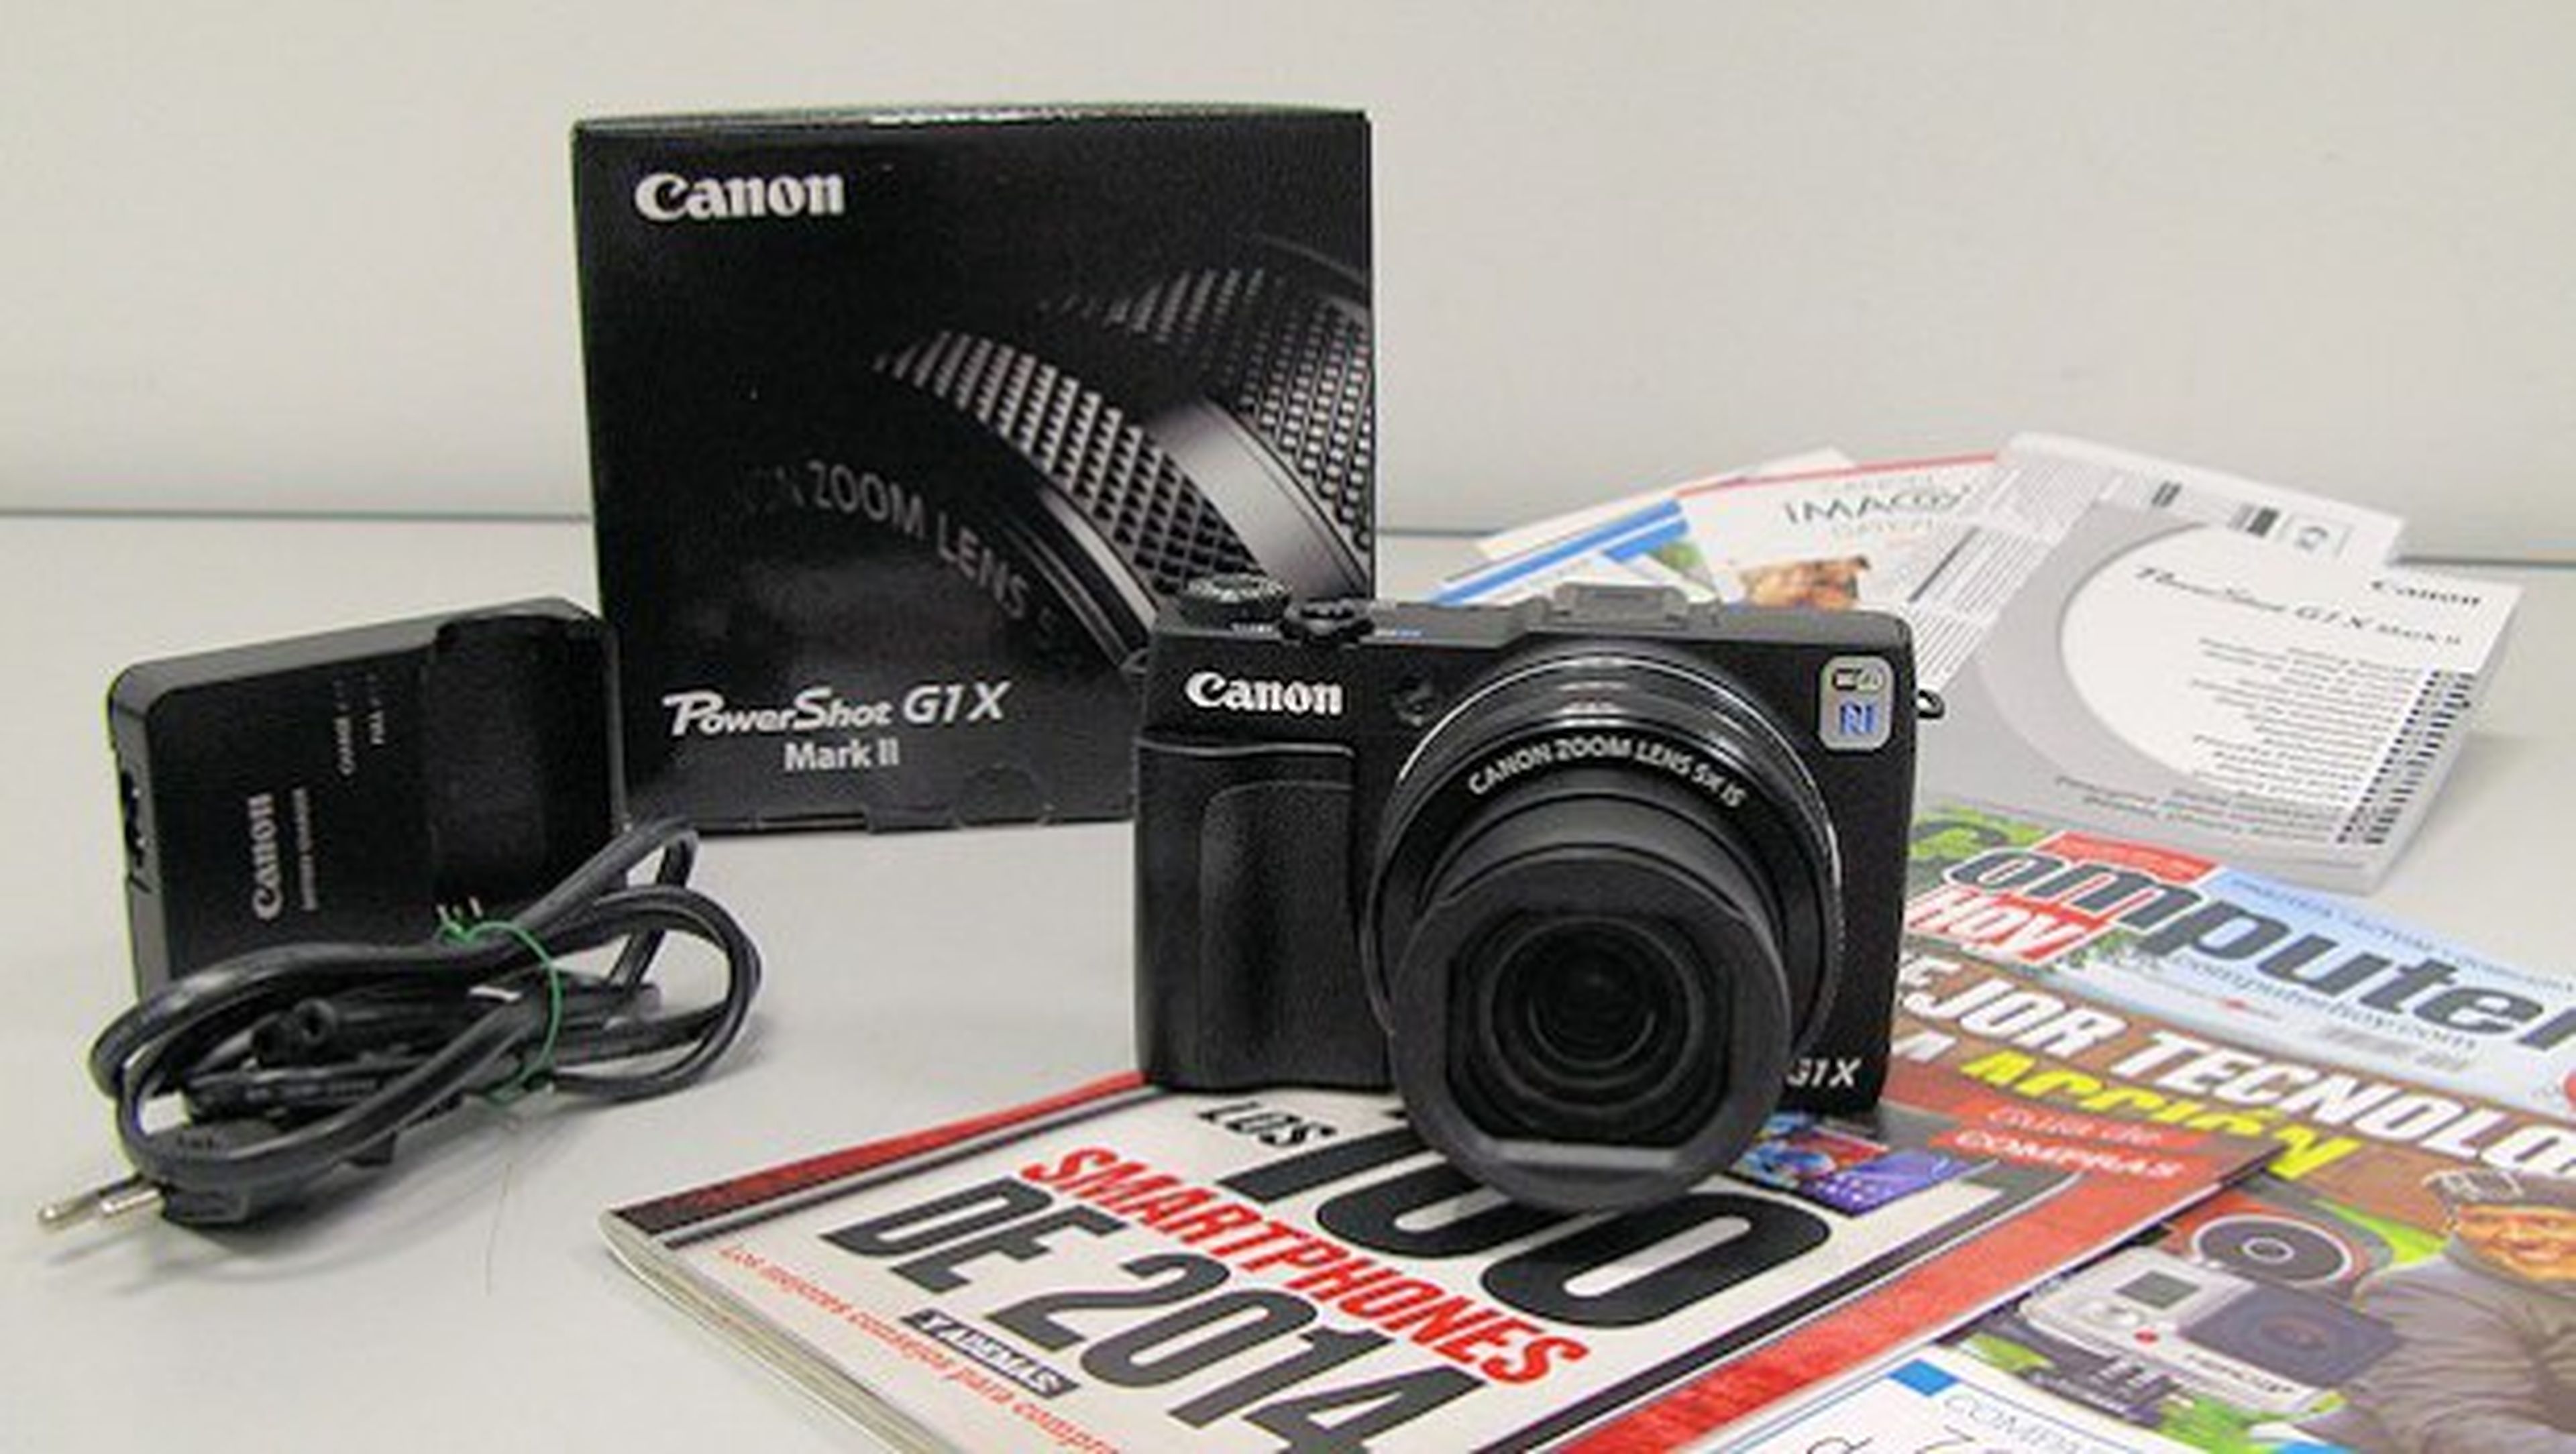 Nueva Canon PowerShot G1X Mark II, unboxing en vídeo